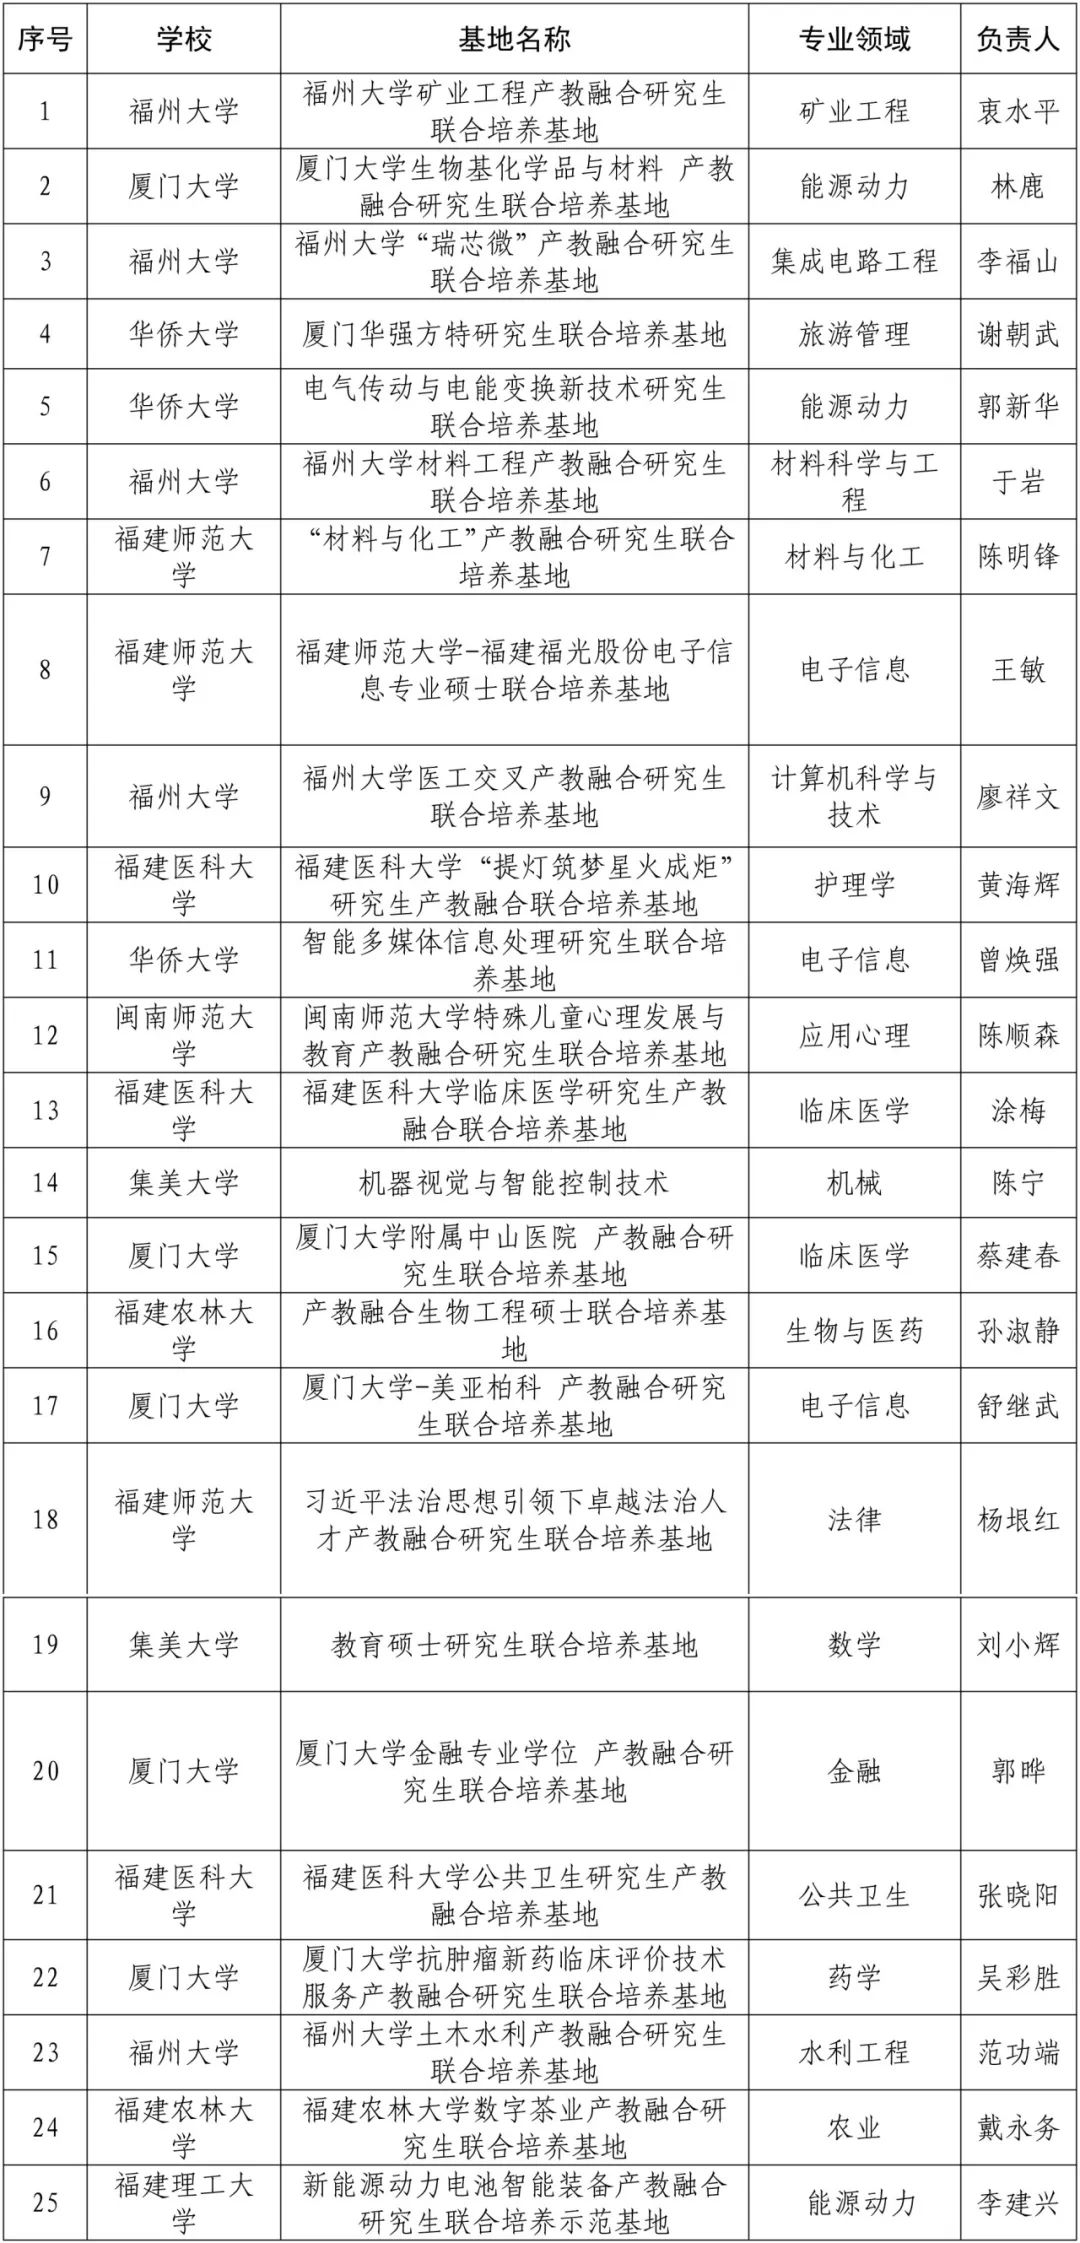 福建省学位委员会公布第二批研究生教育项目名单